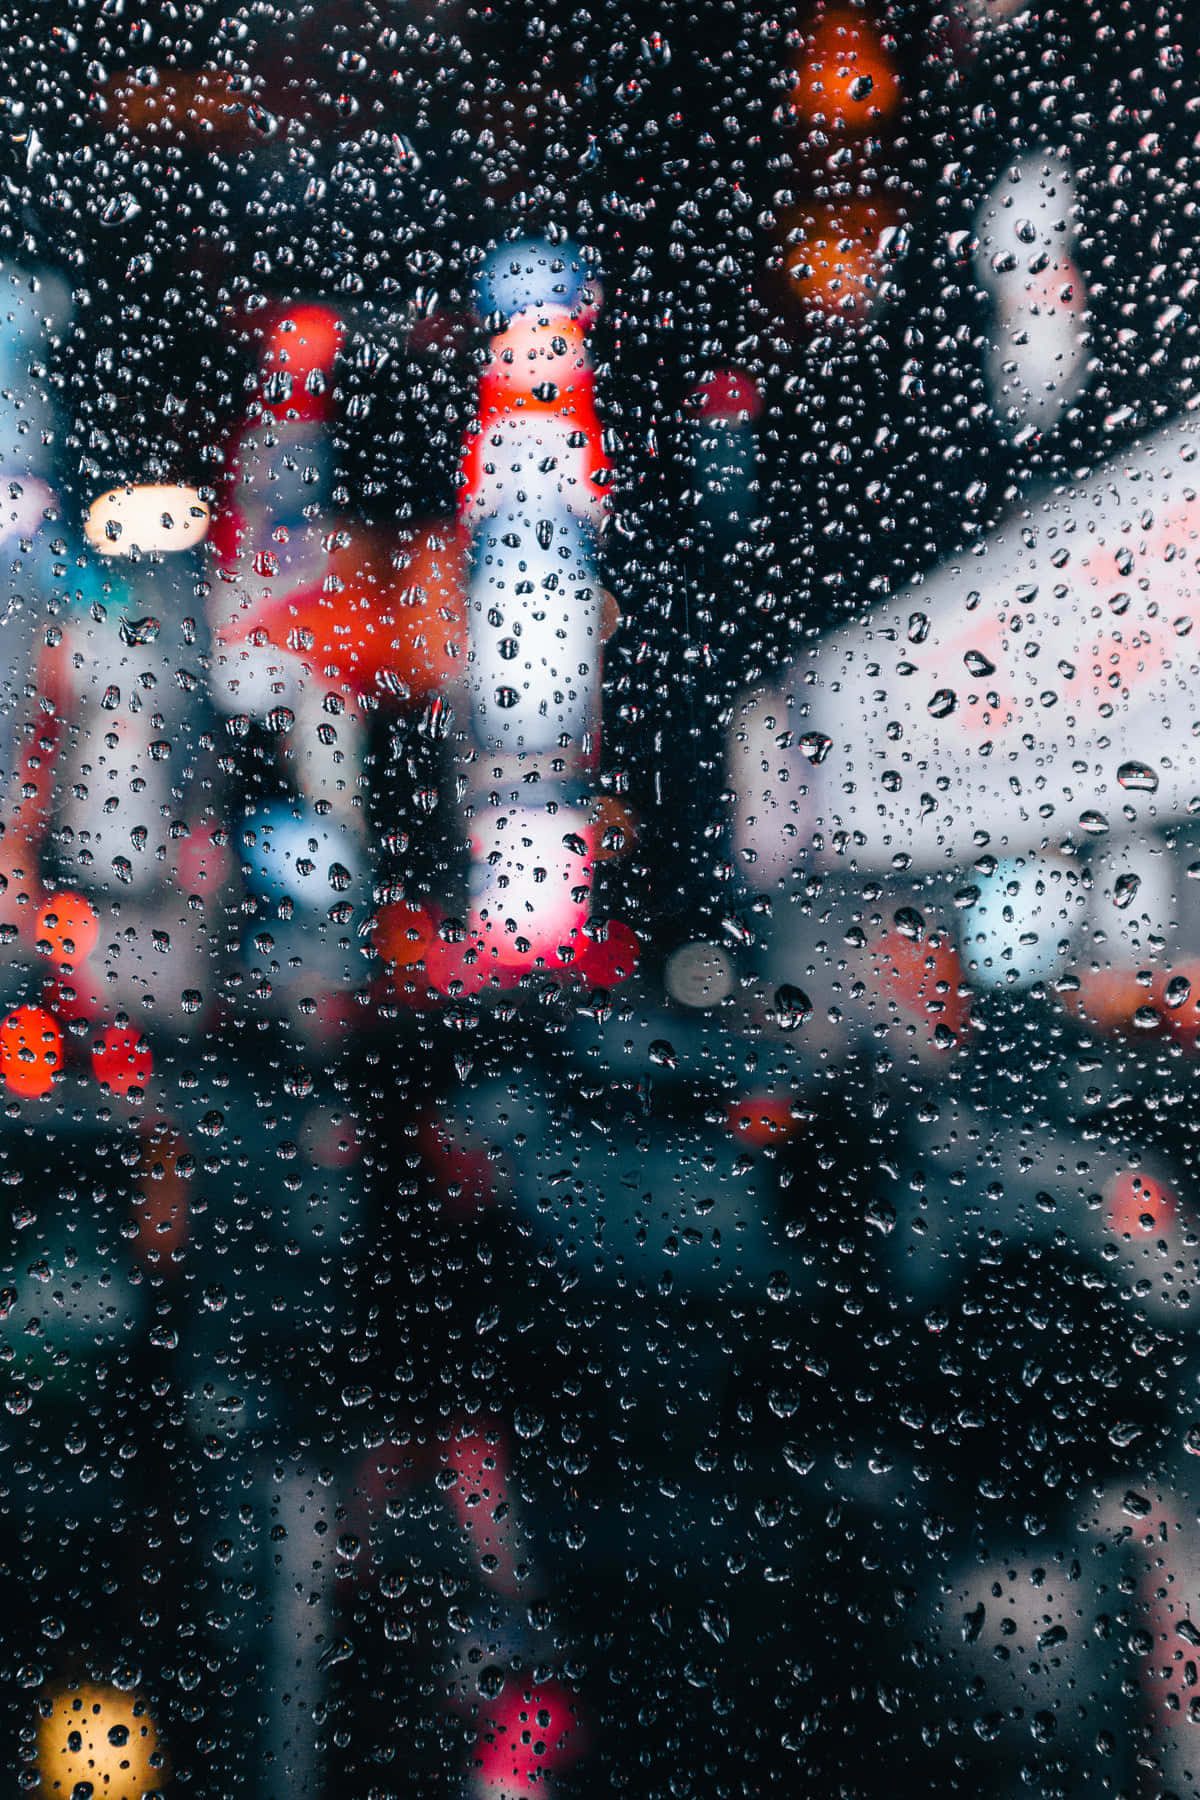 Portrait Rain Drops Blur Cool Photos Background Wallpaper